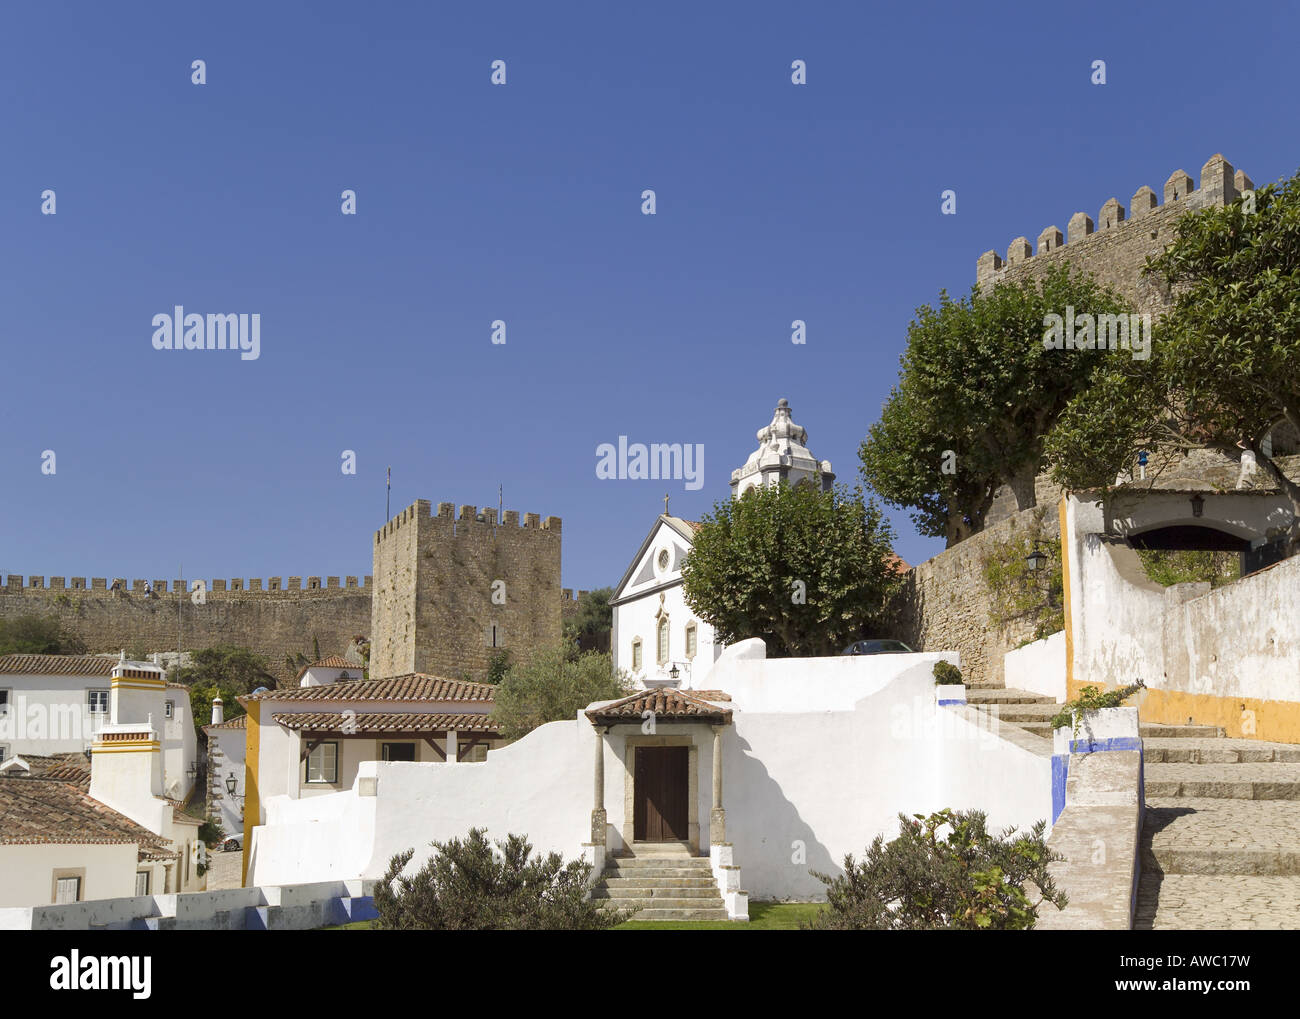 Estremadura, Obidos, borgo medievale cinto da mura, Foto Stock